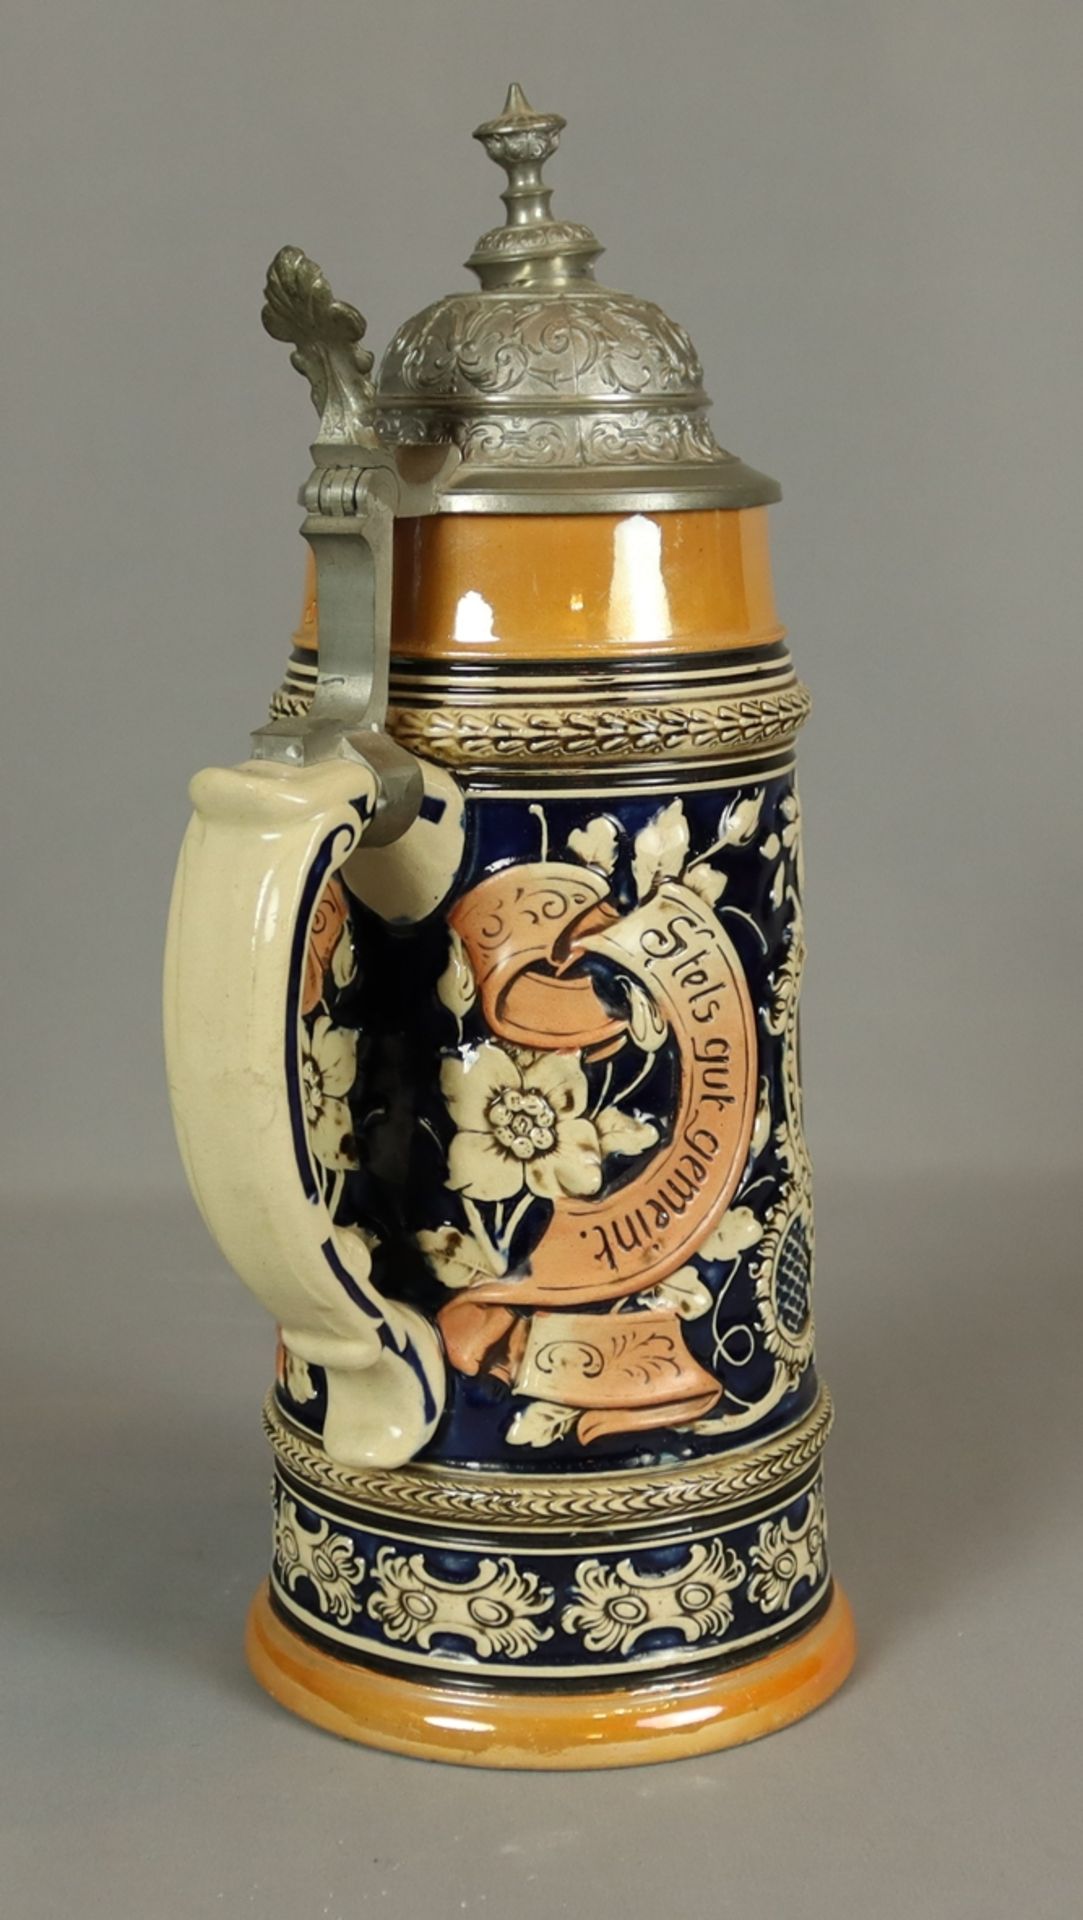 Großer Bierkrug um 1900, Majolika ohne Marke, heller Scherben, farblich gestaltet, Korpus facettier - Bild 2 aus 2